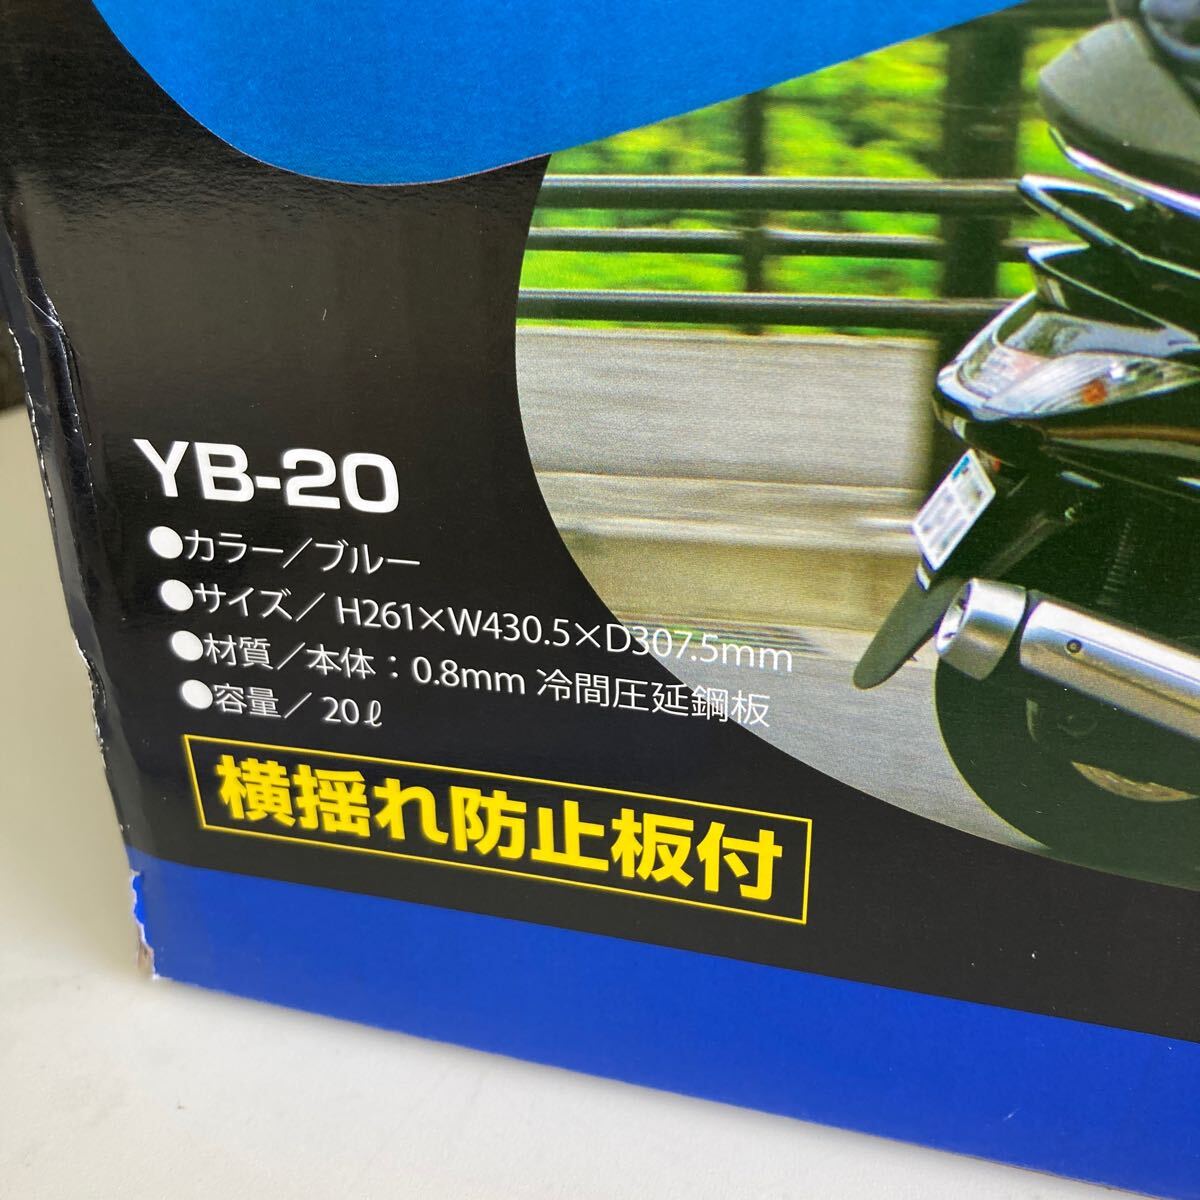 0604c1508 YAZAWA (矢澤産業) ガソリン携行缶 横型タイプ 20L 消防法適合品 ブルー YB20 ※※同梱不可※※の画像10